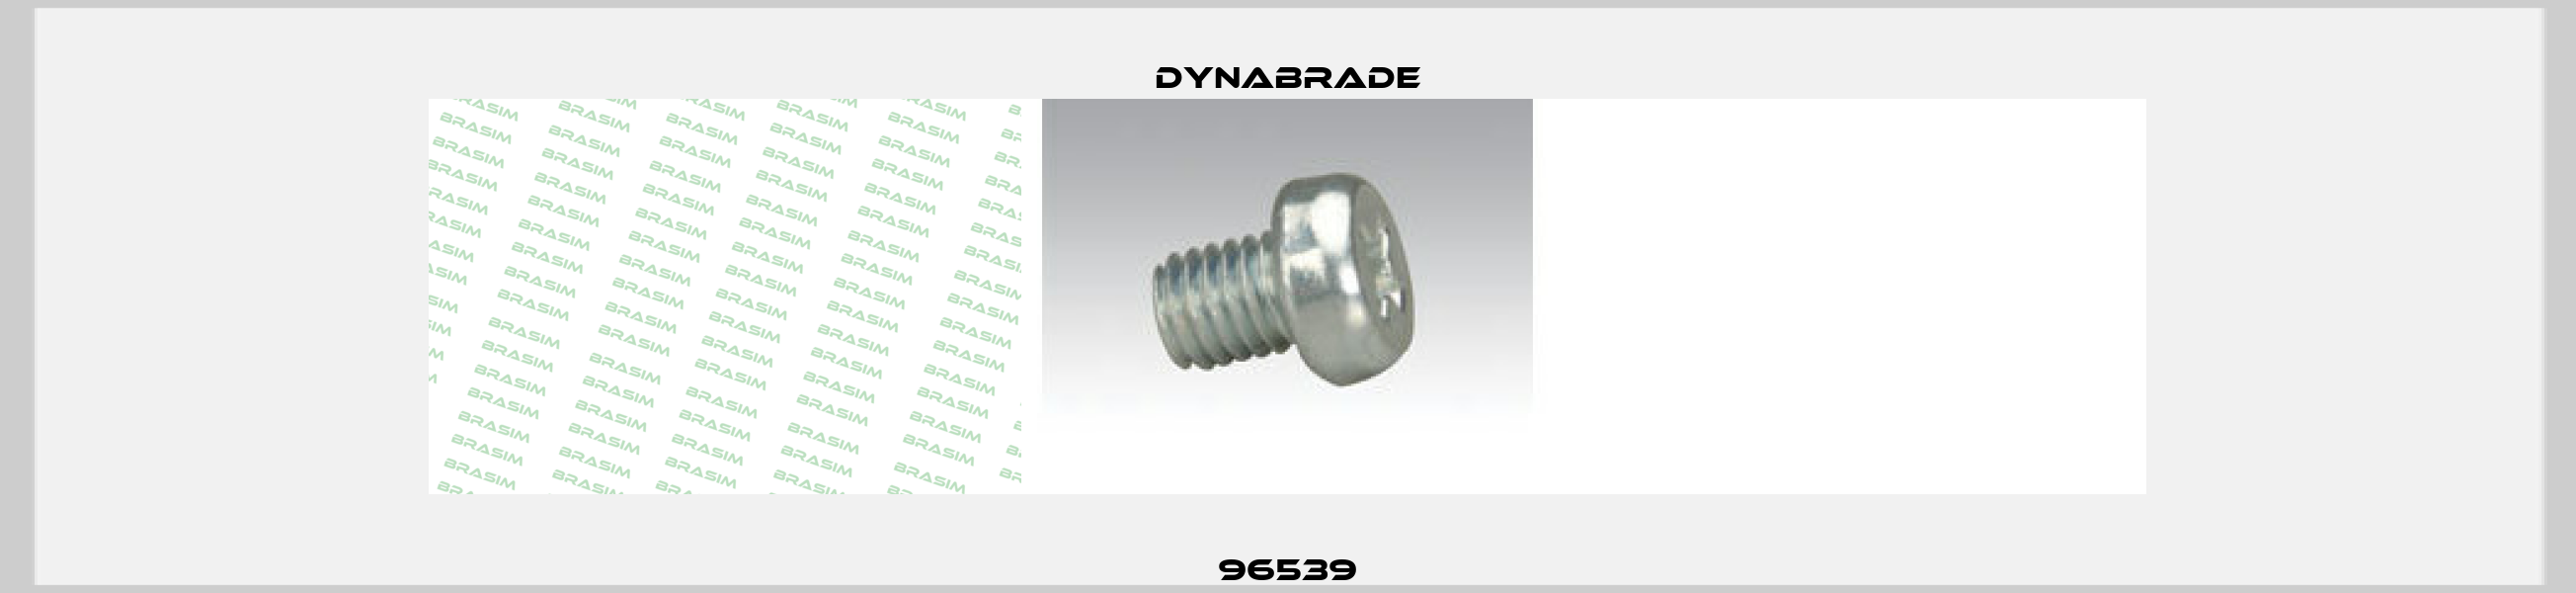 96539 Dynabrade